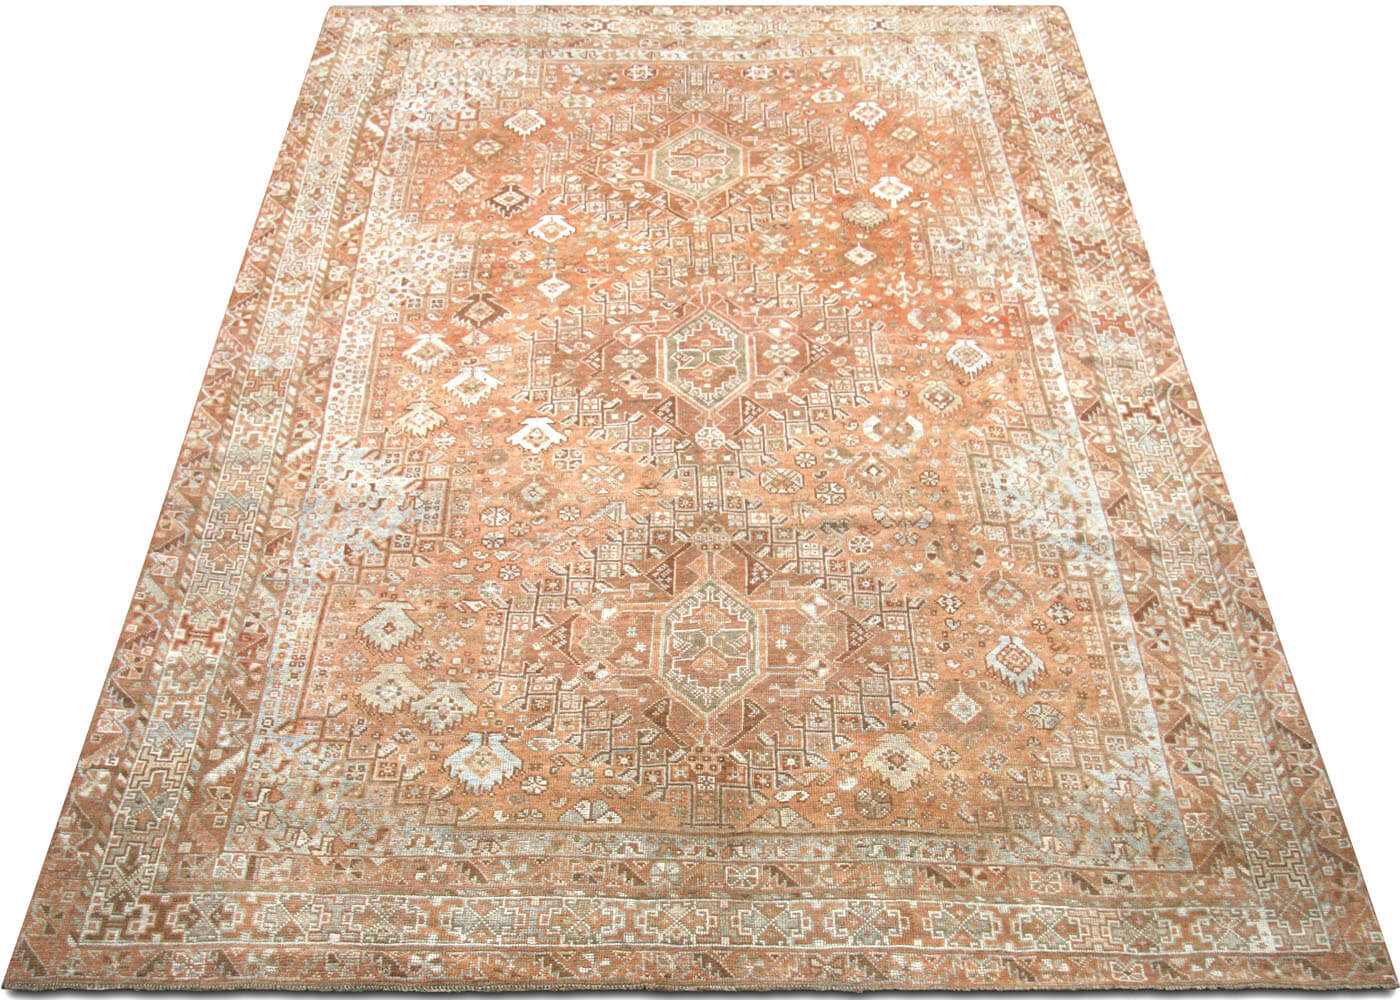 Semi Antique Persian Shiraz Rug - 7'4" x 10'7"